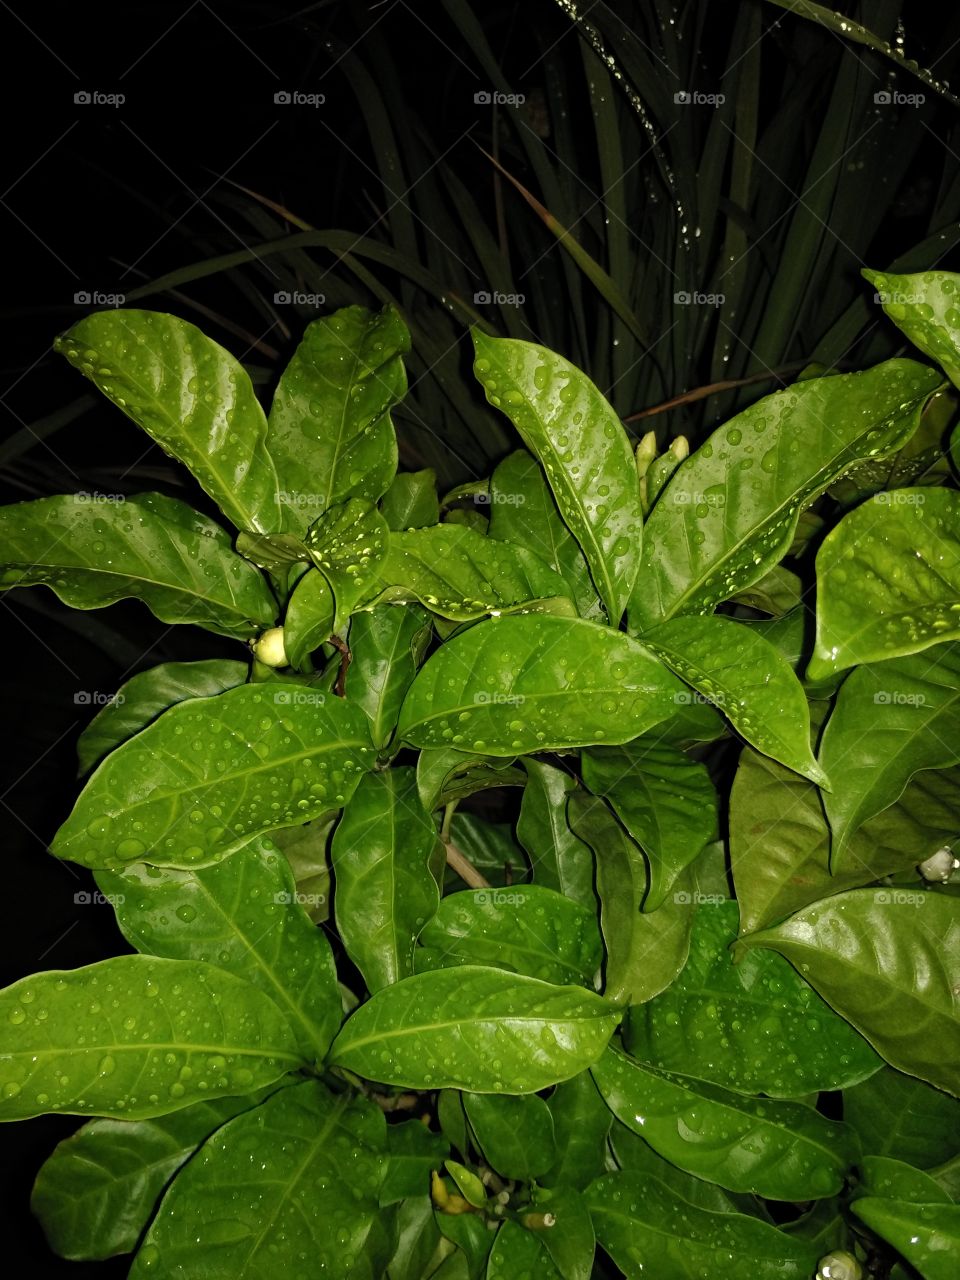 Green leaf at night